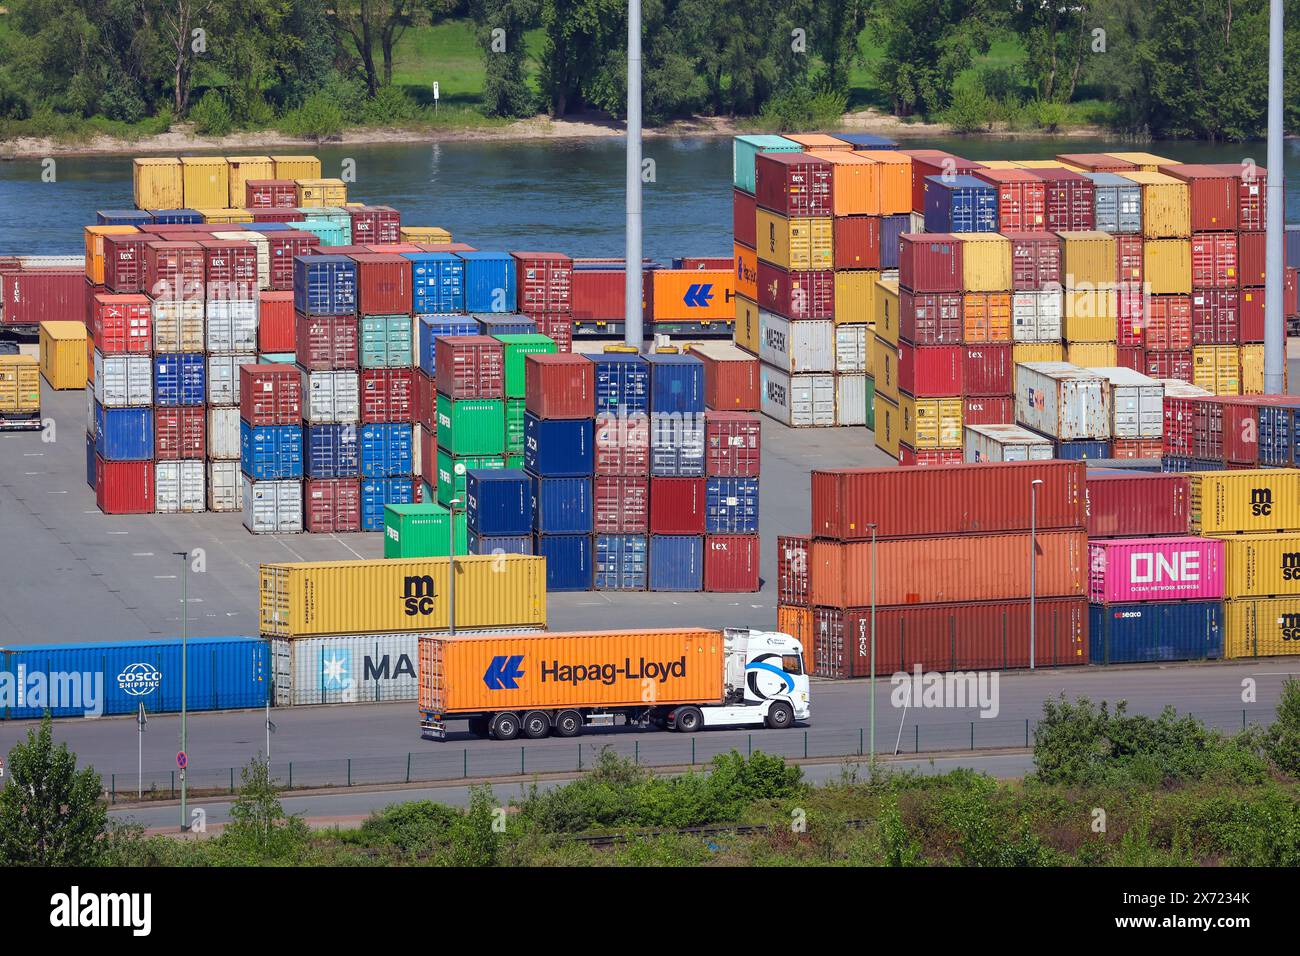 Duisburg, Ruhrgebiet, Nordrhein-Westfalen, Deutschland - Containerterminal im Rheinhafen Duisburg in Wanheim-Angerhausen, kombinierter Transp Stockfoto